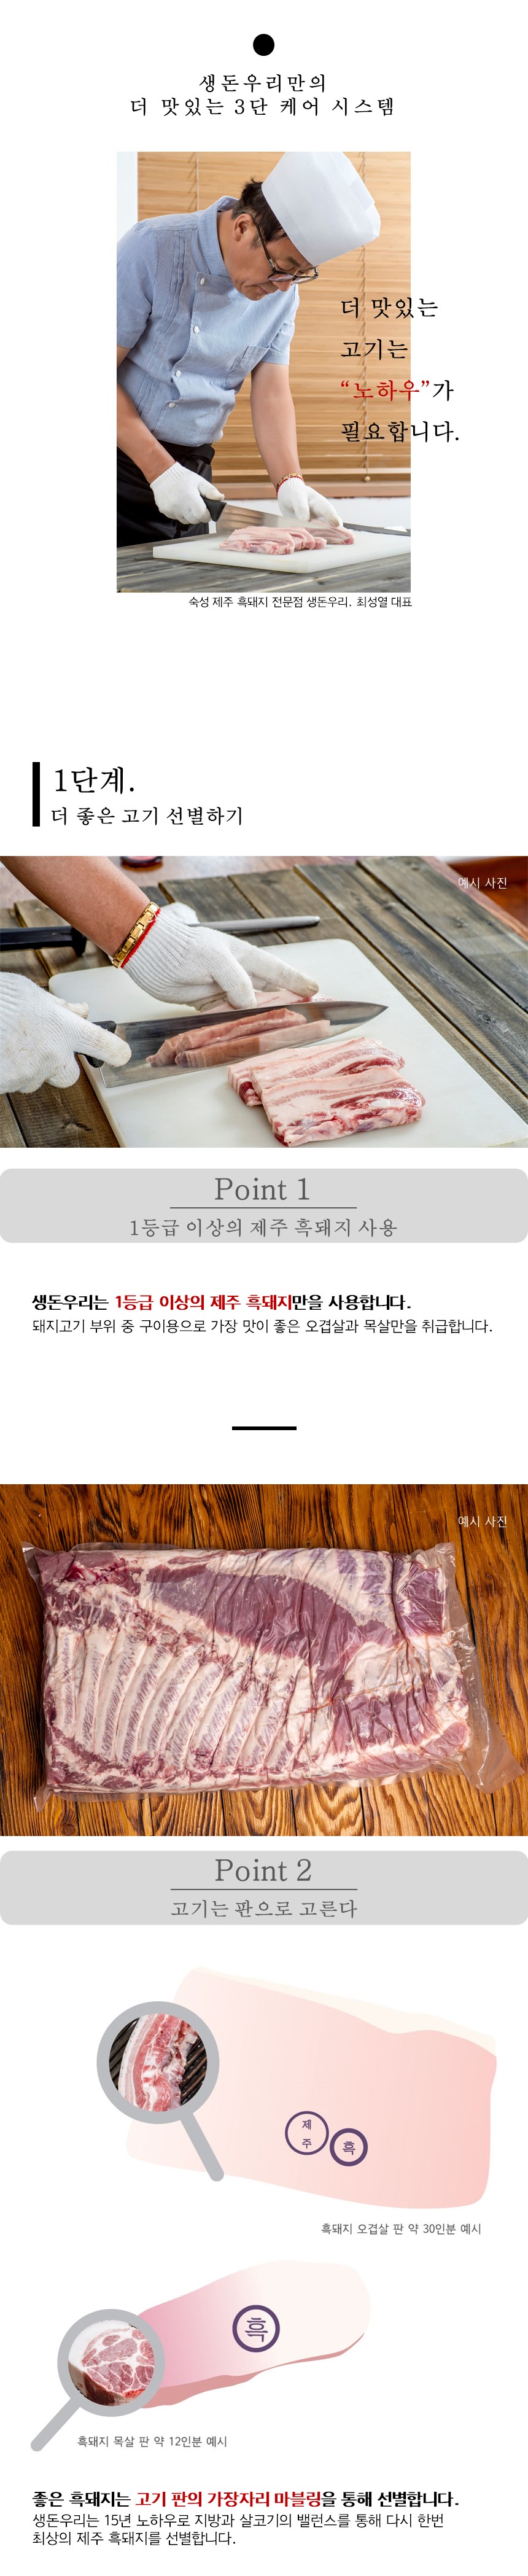 [냉장]30숙성 제주 흑돼지 앞다리살 1kg